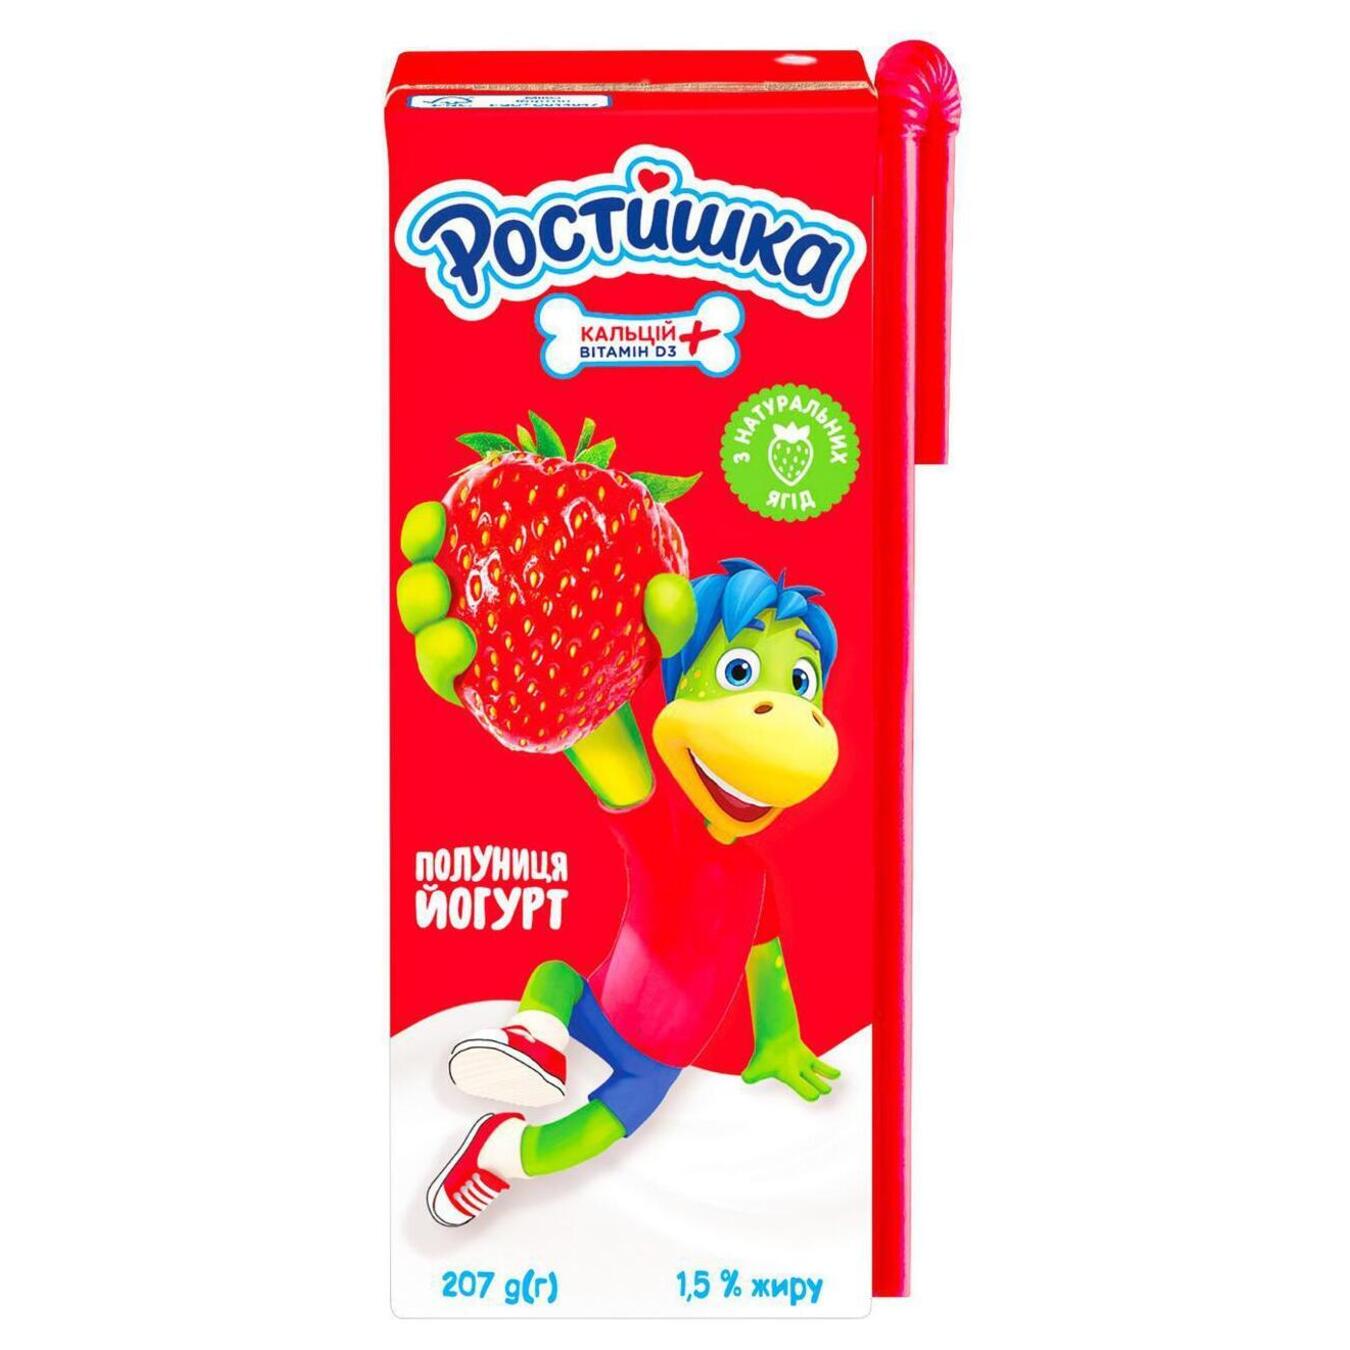 Drinking yogurt Rostyshka strawberry 1.5% 207g